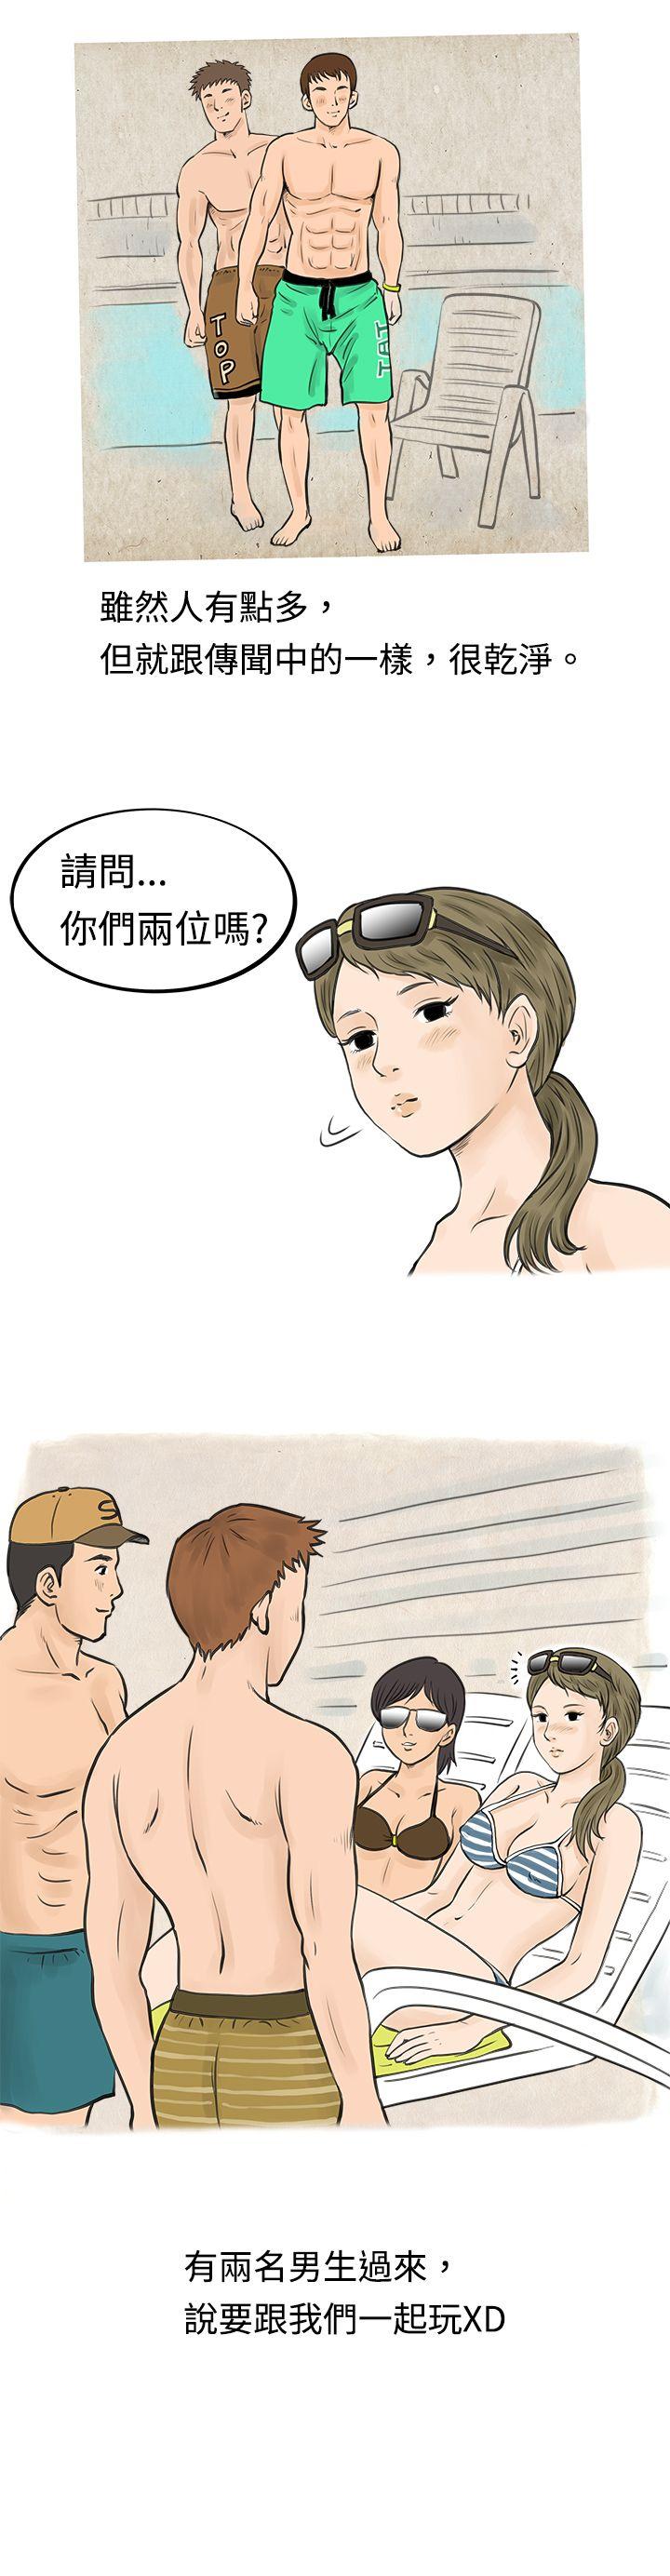 韩国污漫画 秘密Story 在梨泰院游泳池中的小故事(上) 6